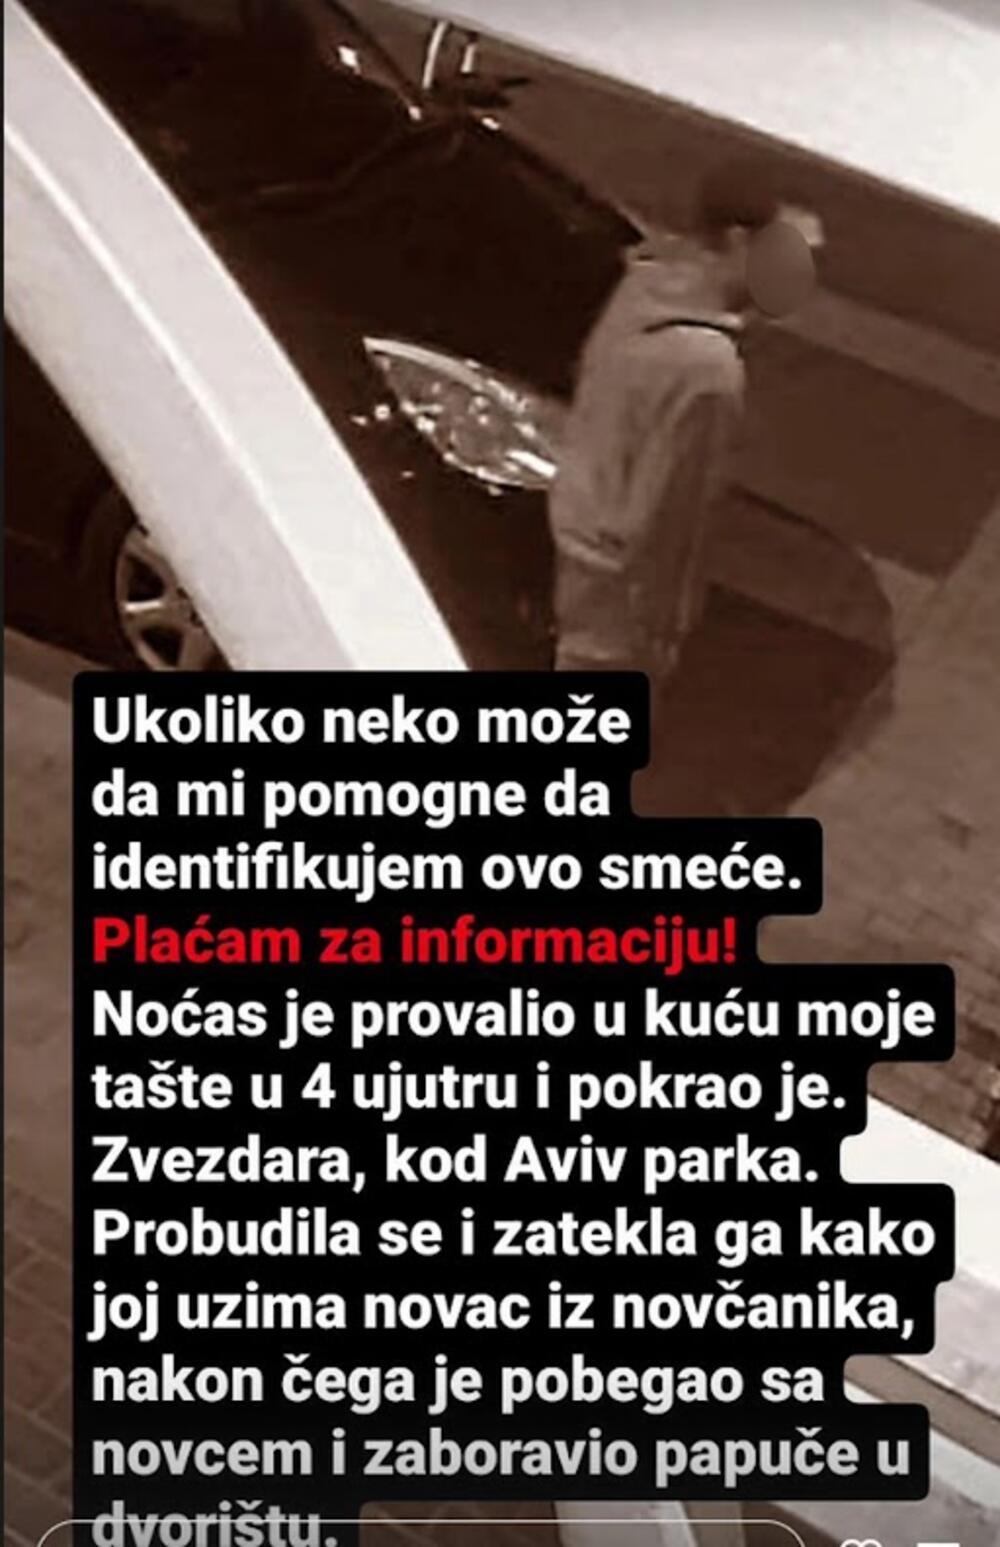 Pevač Sloba Radanović oglasio se na društvenim mrežama gde je otkrio da je njegova tašta, majka Jelene Radanović, opljačkana.